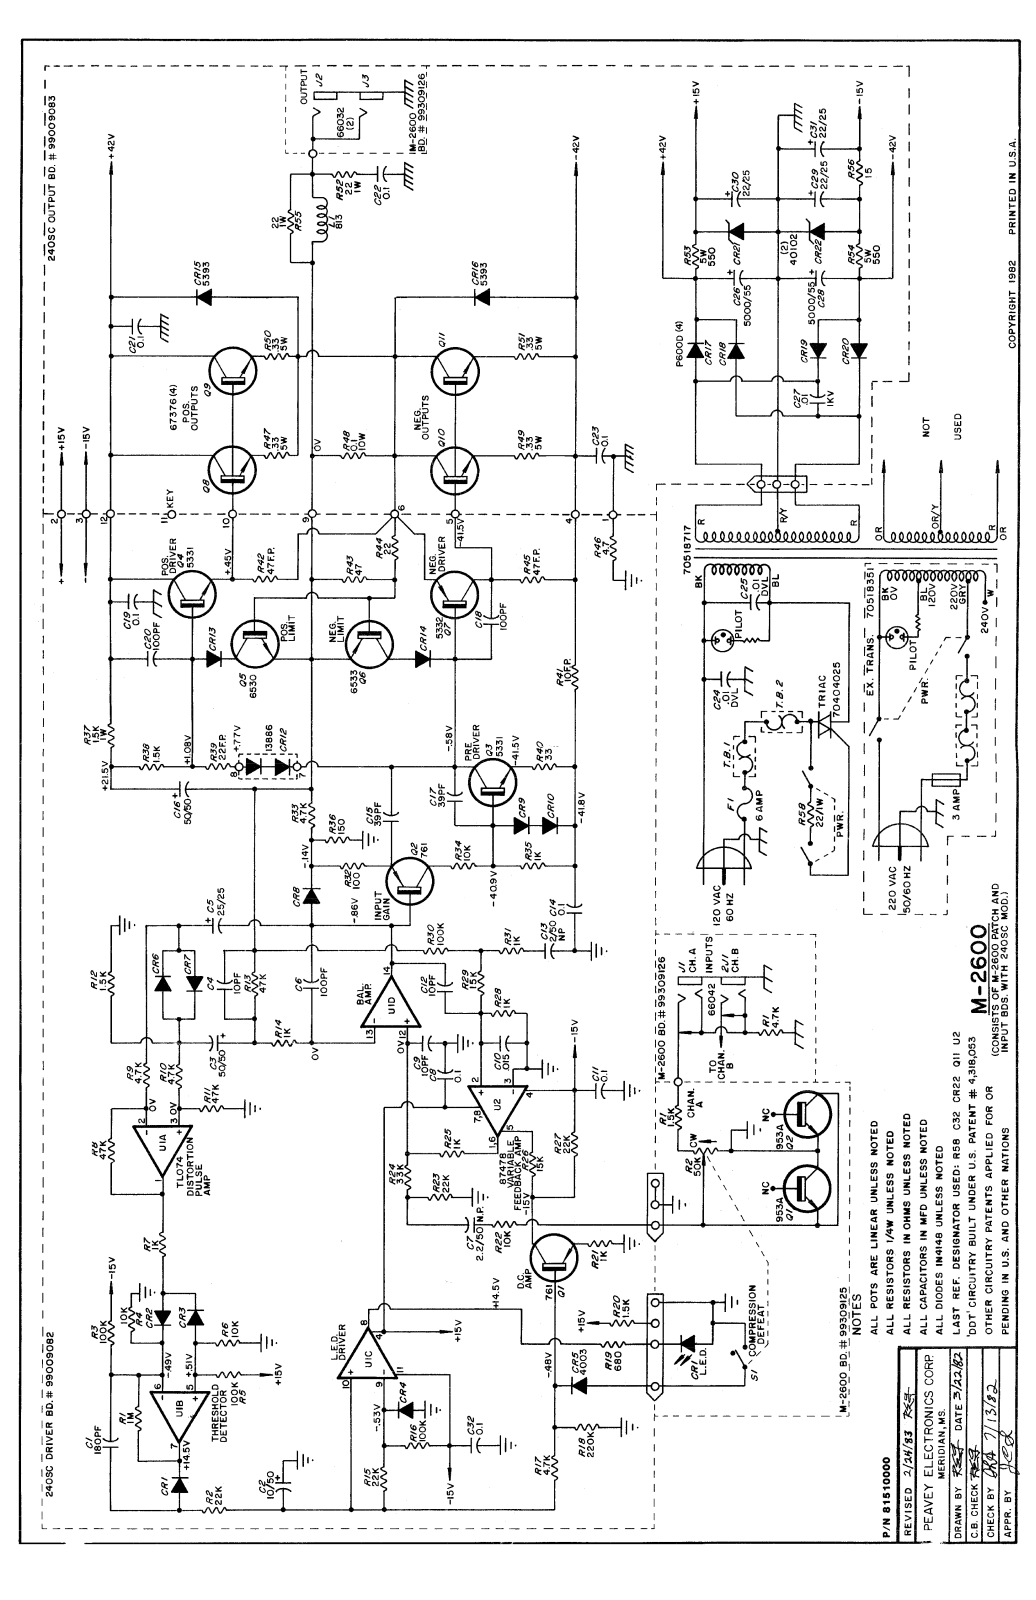 Peavey m2600 schematic